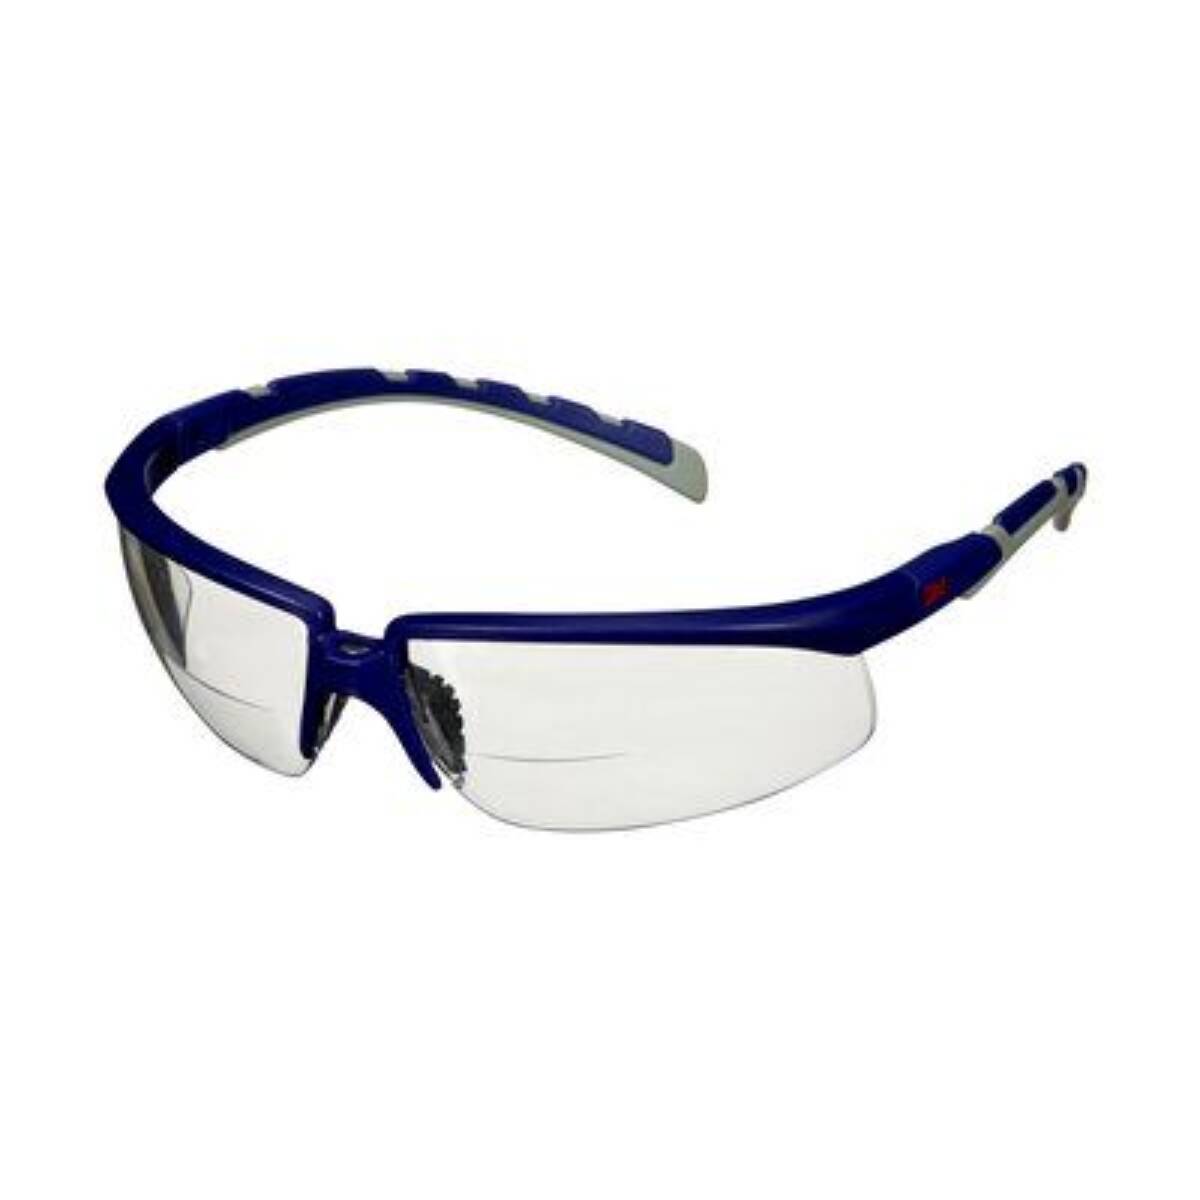 Brille solus 2000 reade pc farbl (bl/gr) - Schutzbrille - Vandeputte Safety  Experts